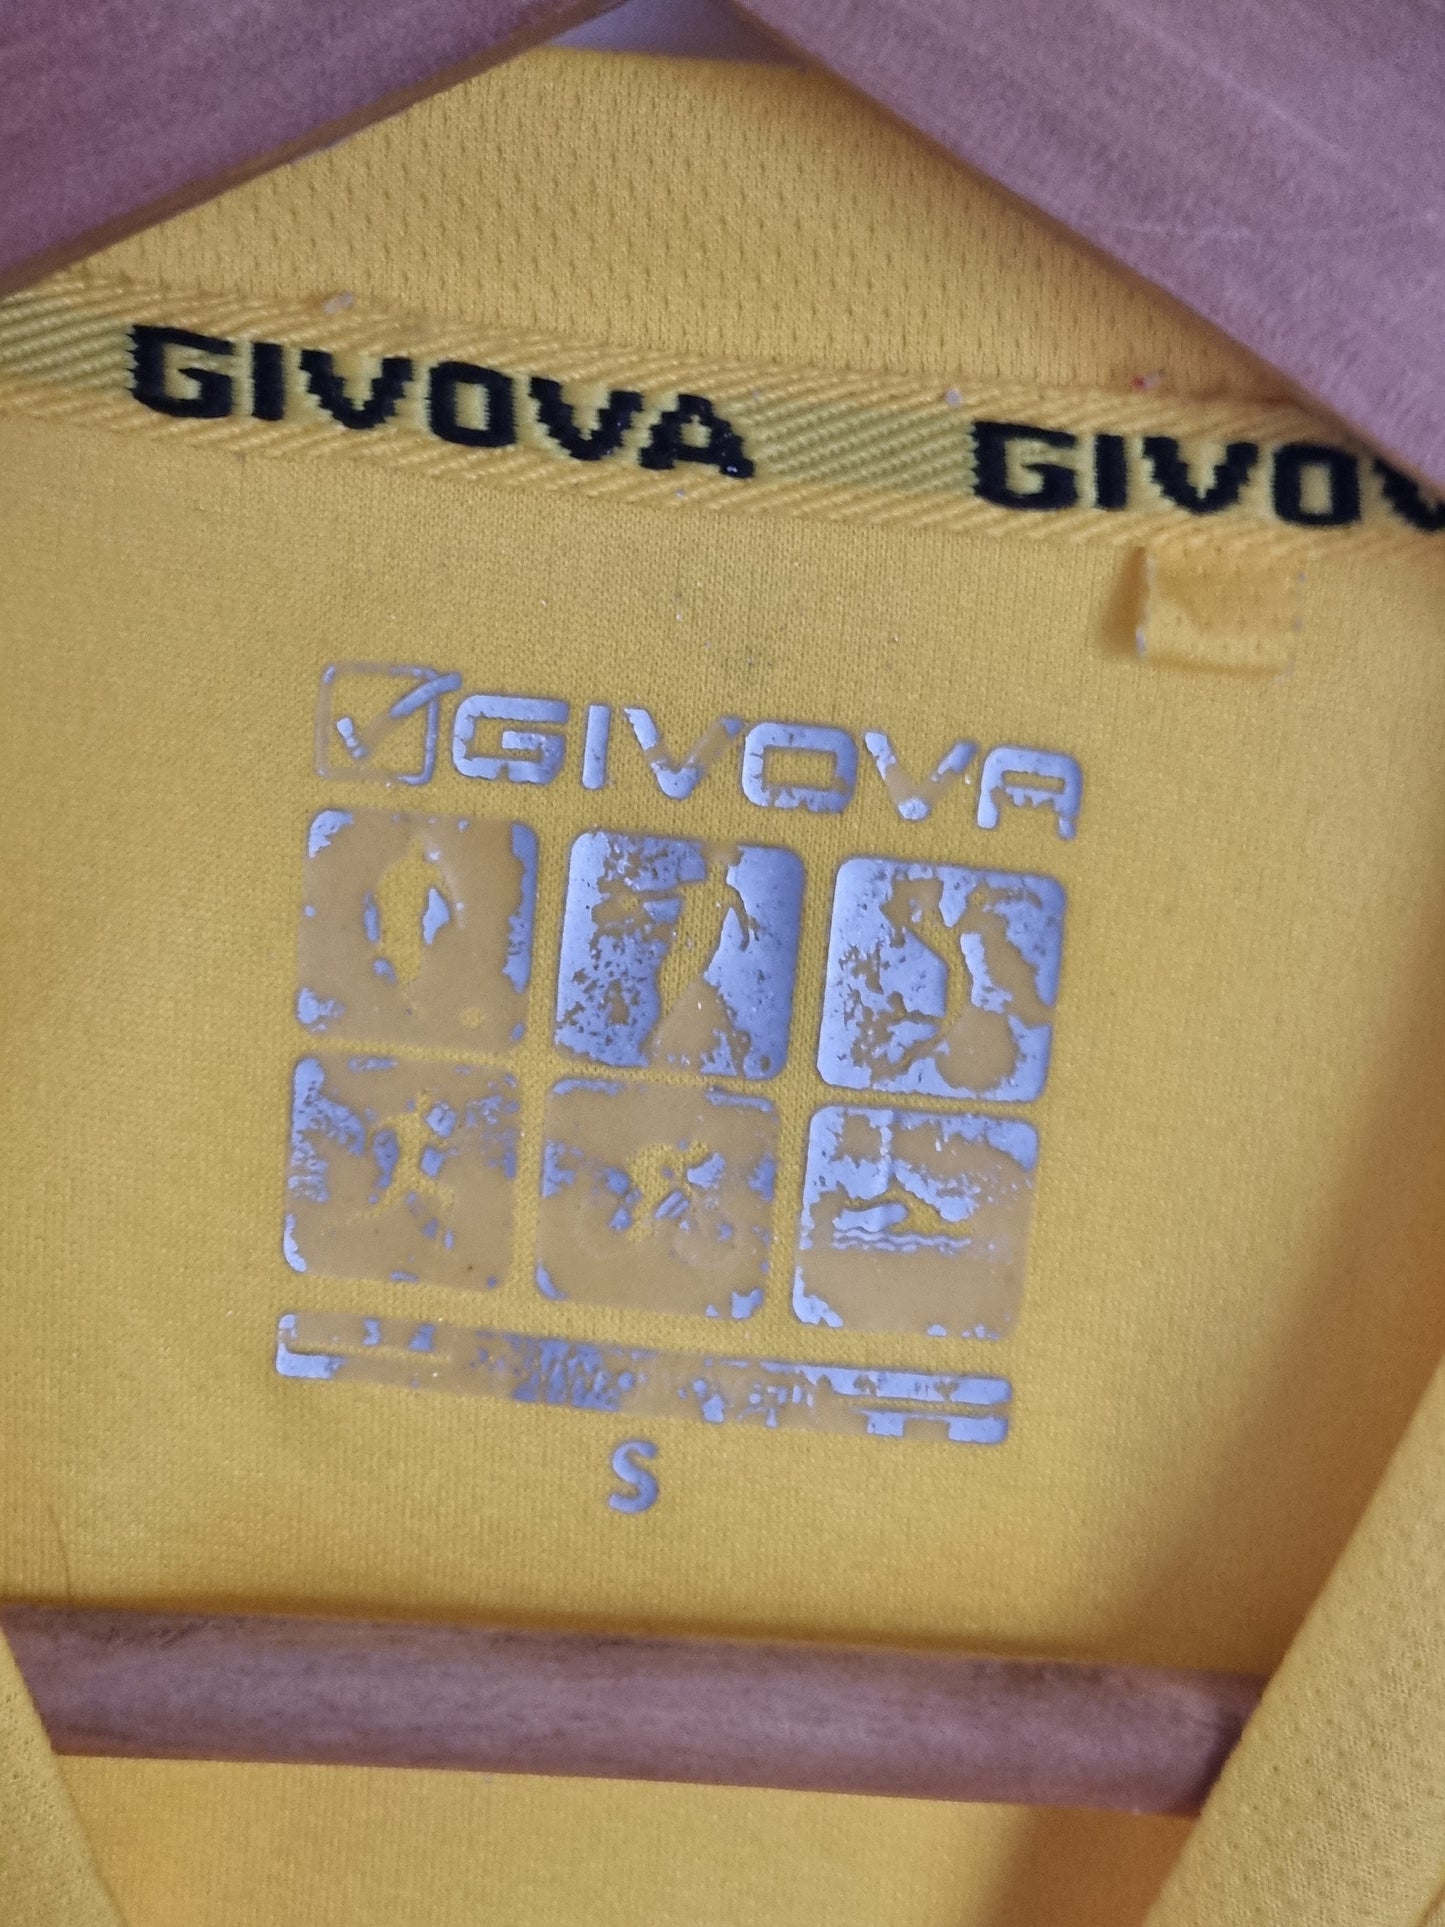 Givova Chievo Verona 17/18 Training Shirt Small